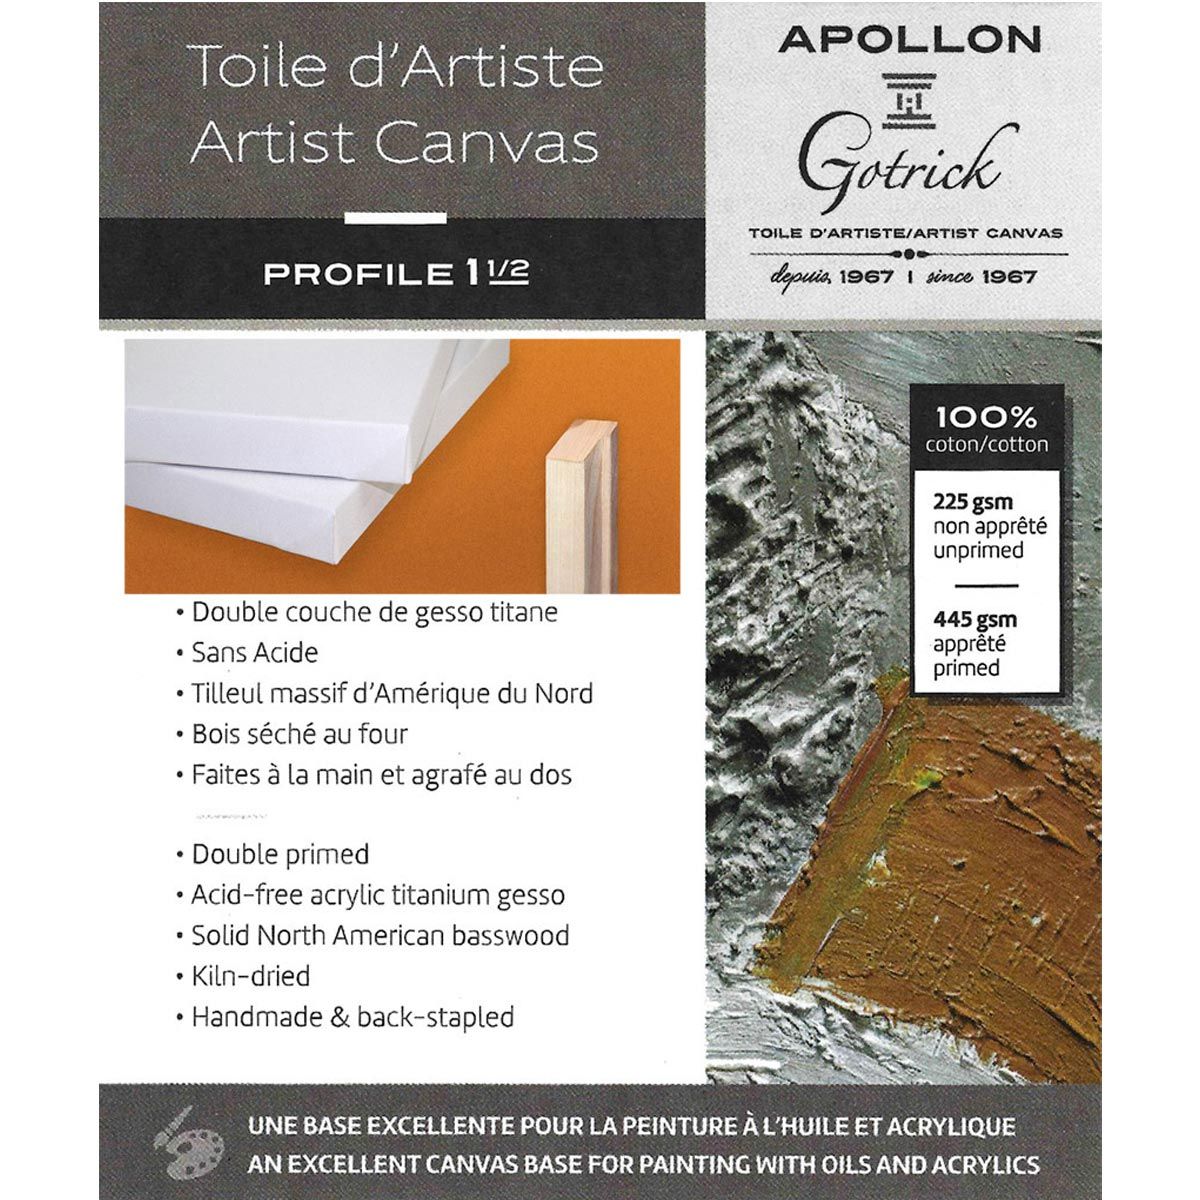 Apollon Gotrick Gallery Artist Canvas Profile 1½" Open Stock